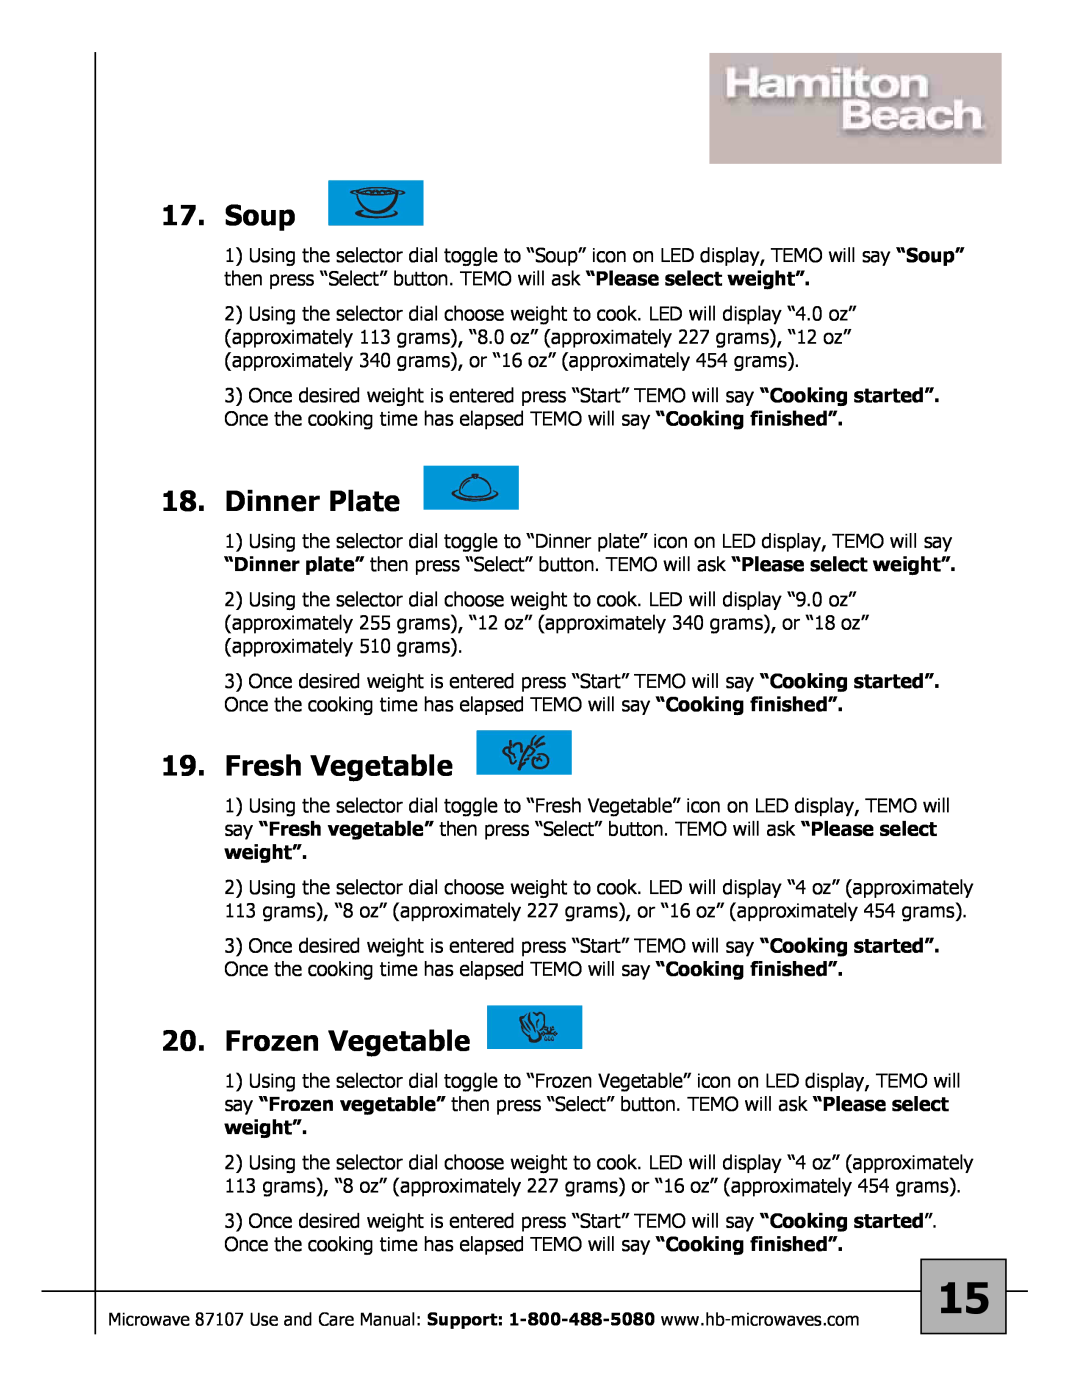 Hamilton Beach 87107 owner manual Soup, Dinner Plate, Fresh Vegetable, Frozen Vegetable 